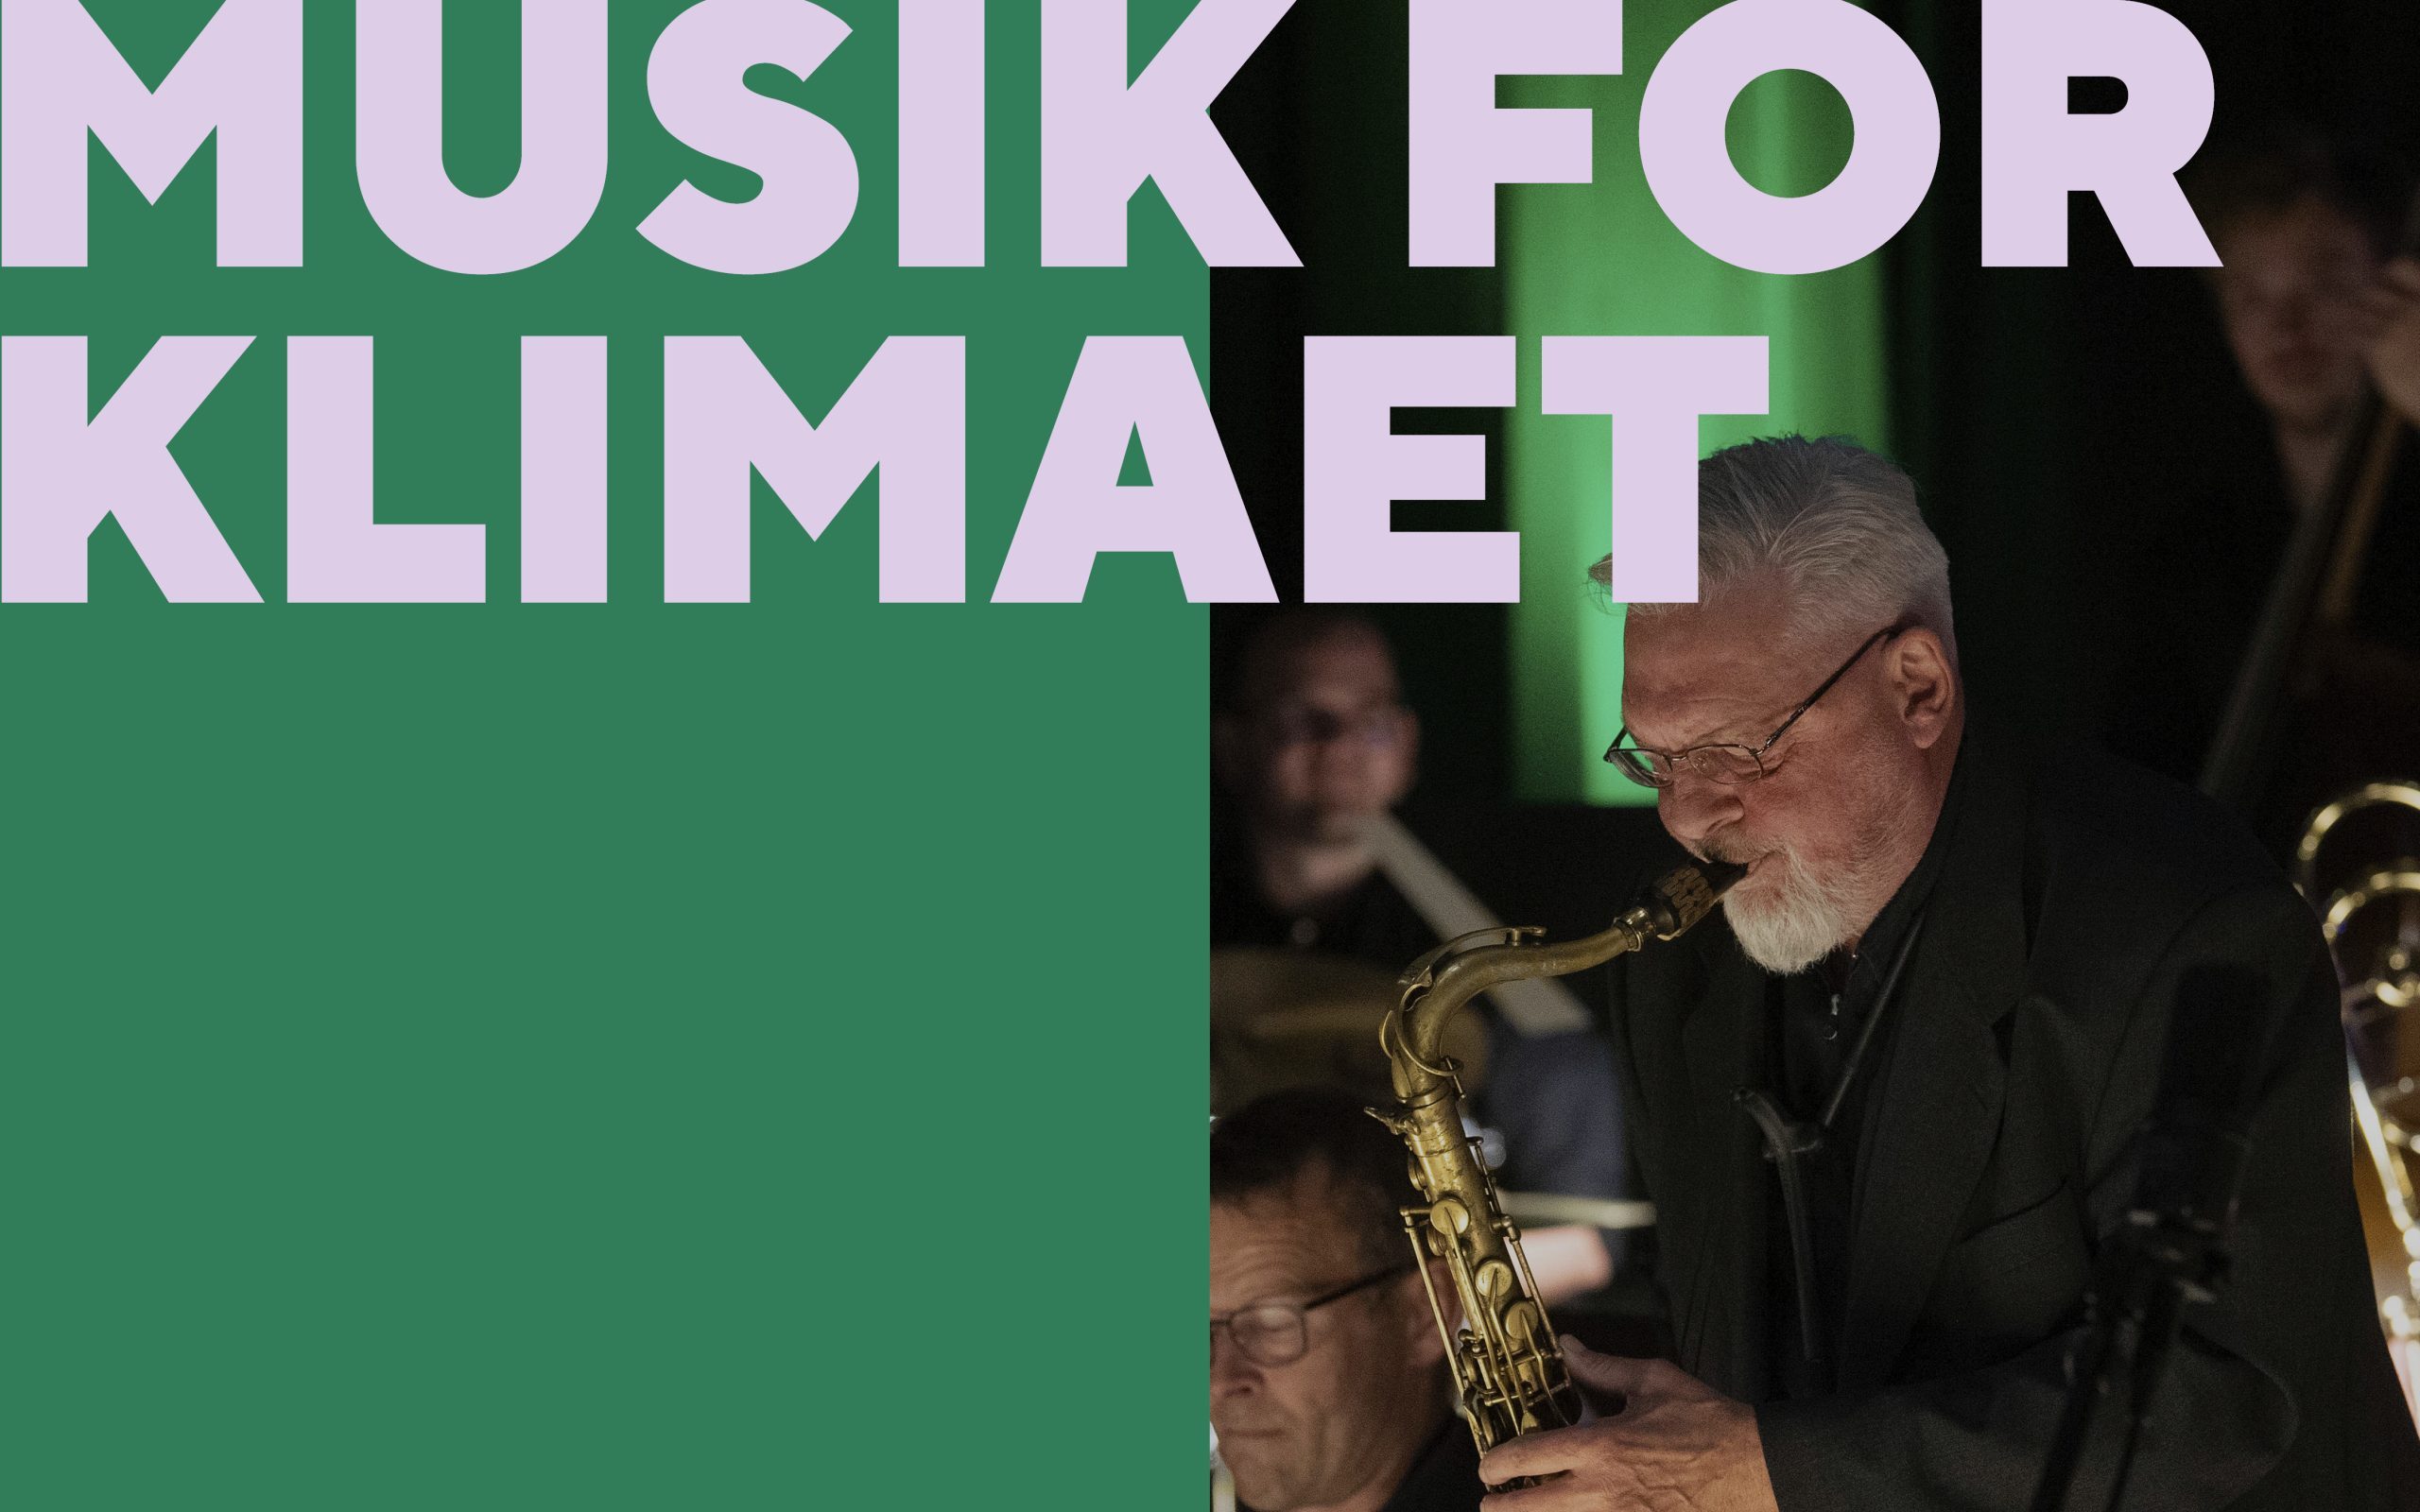 Musik For Klimaet